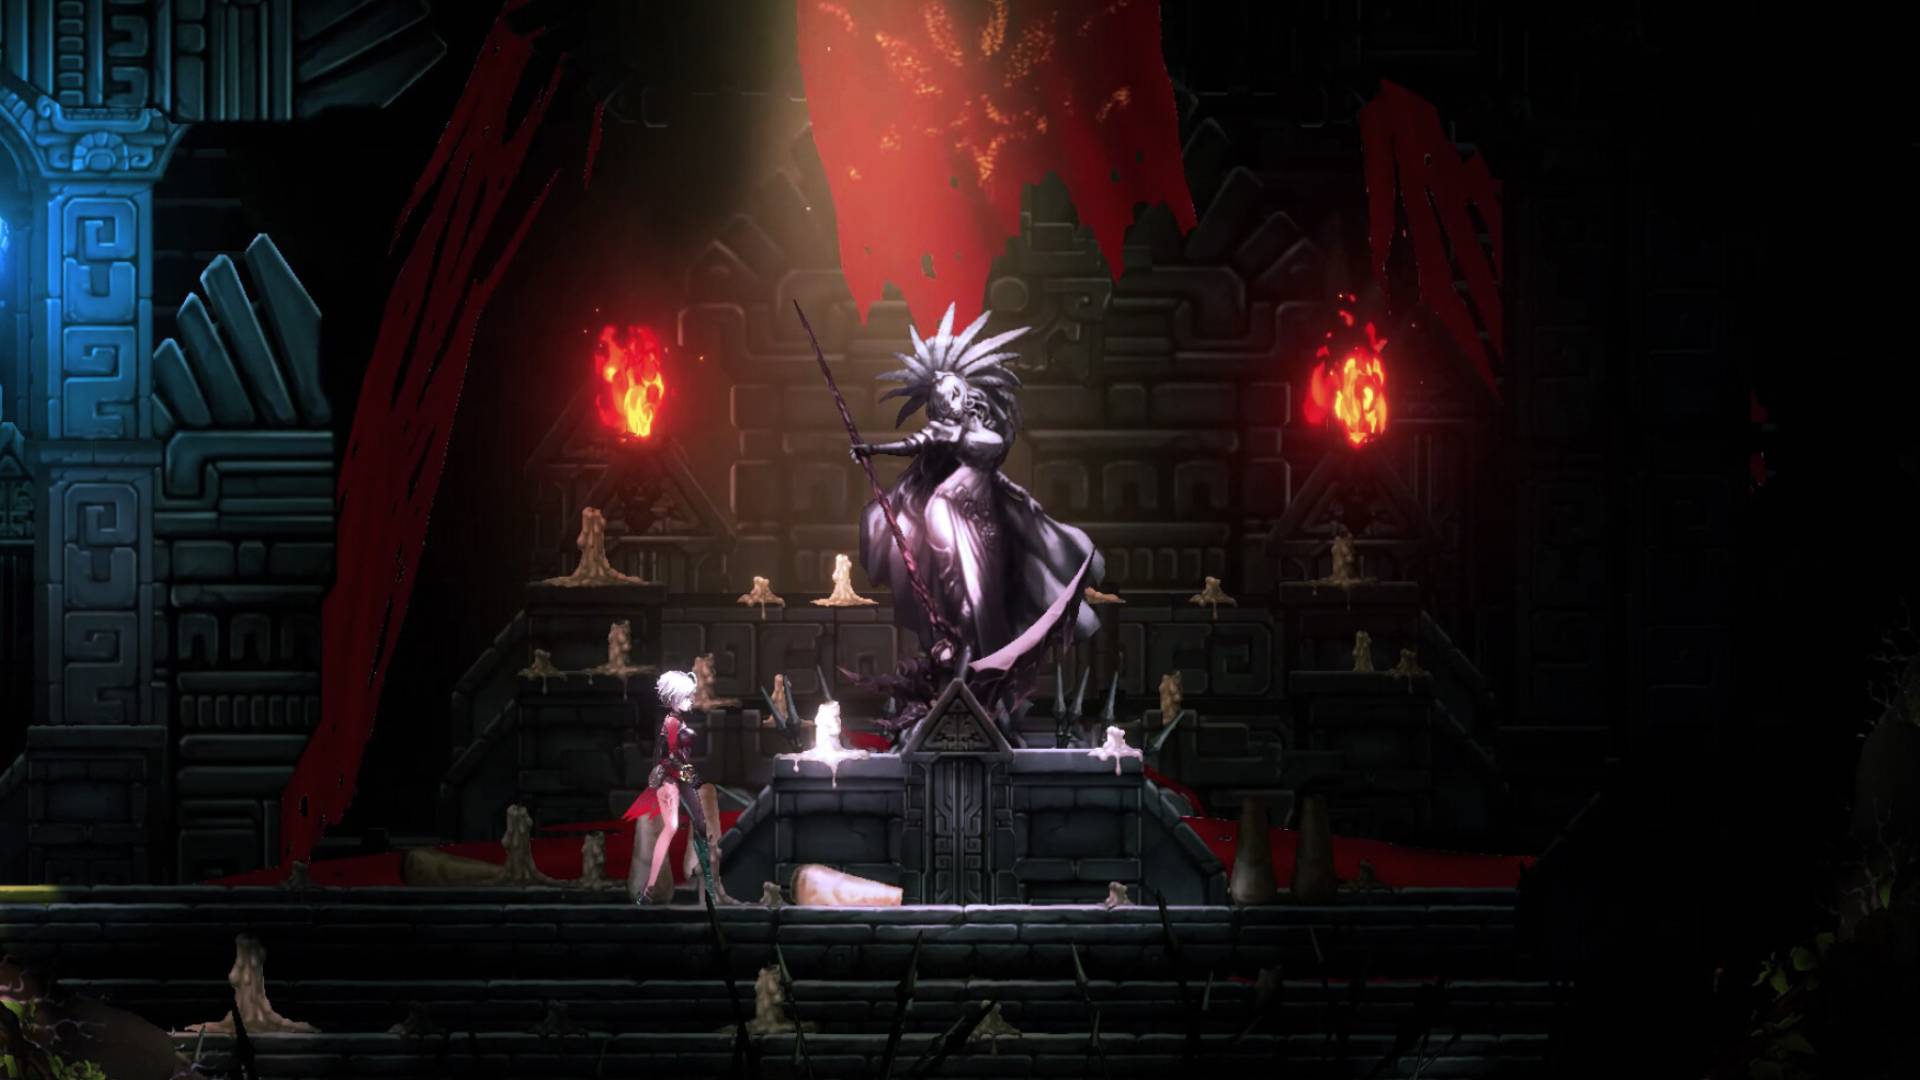 Animovaná dívka se stříbrnými vlasy stojí vedle sochy postavy podobné bohyni v tlumeně osvětlené jeskyni